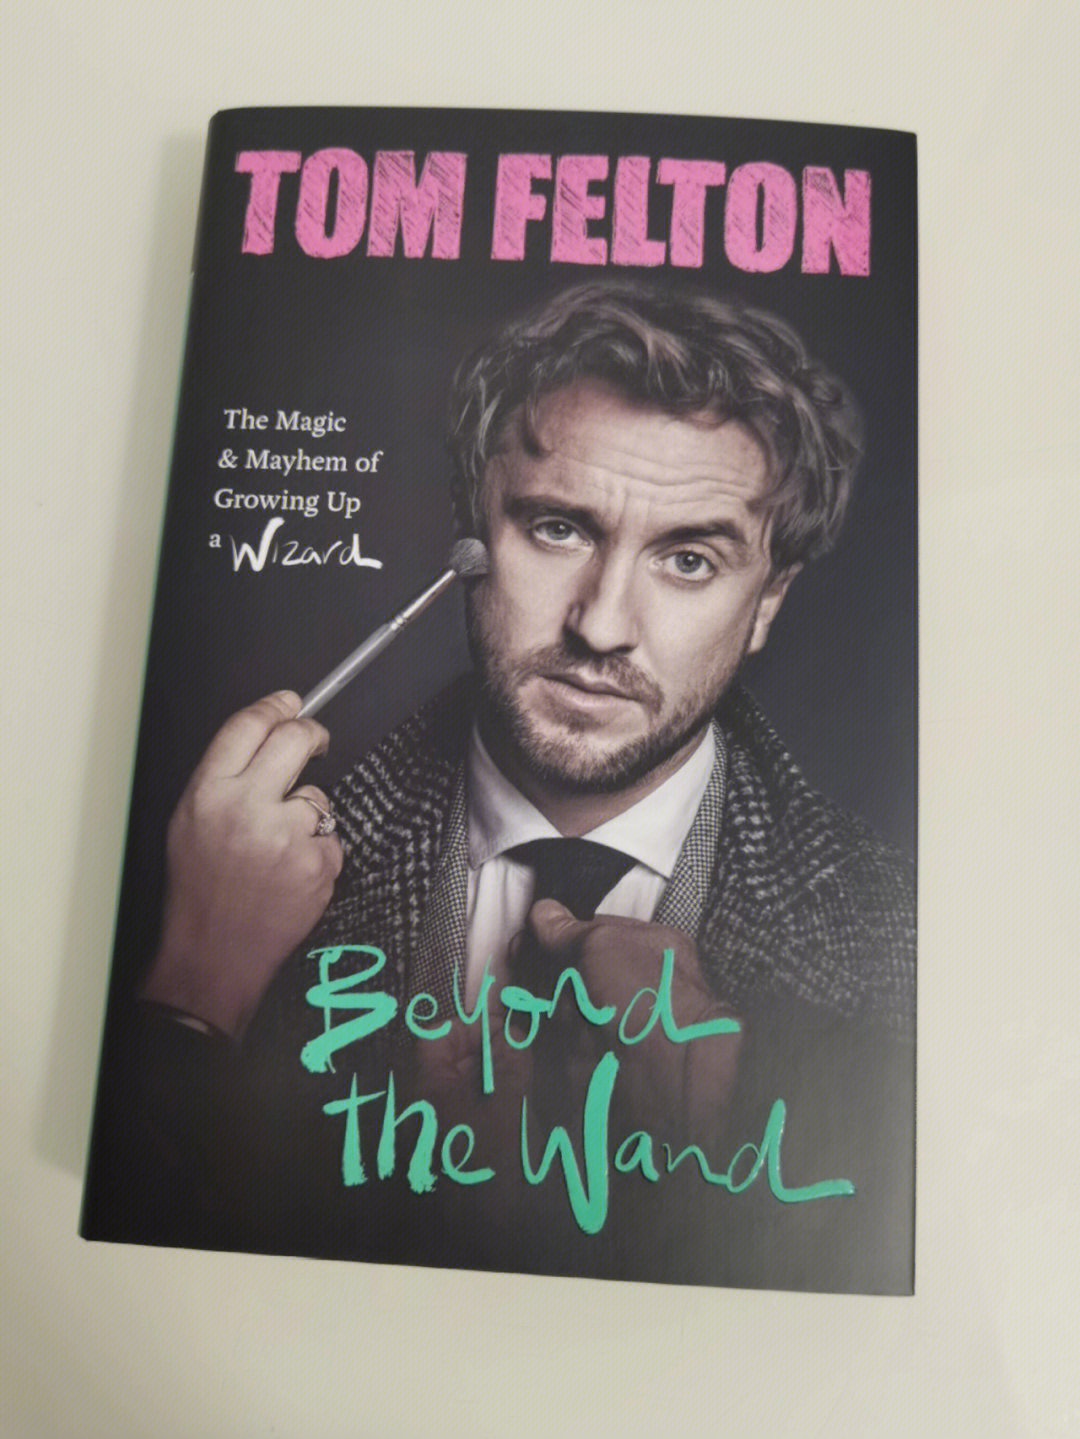 汤姆费尔顿的签名模仿图片